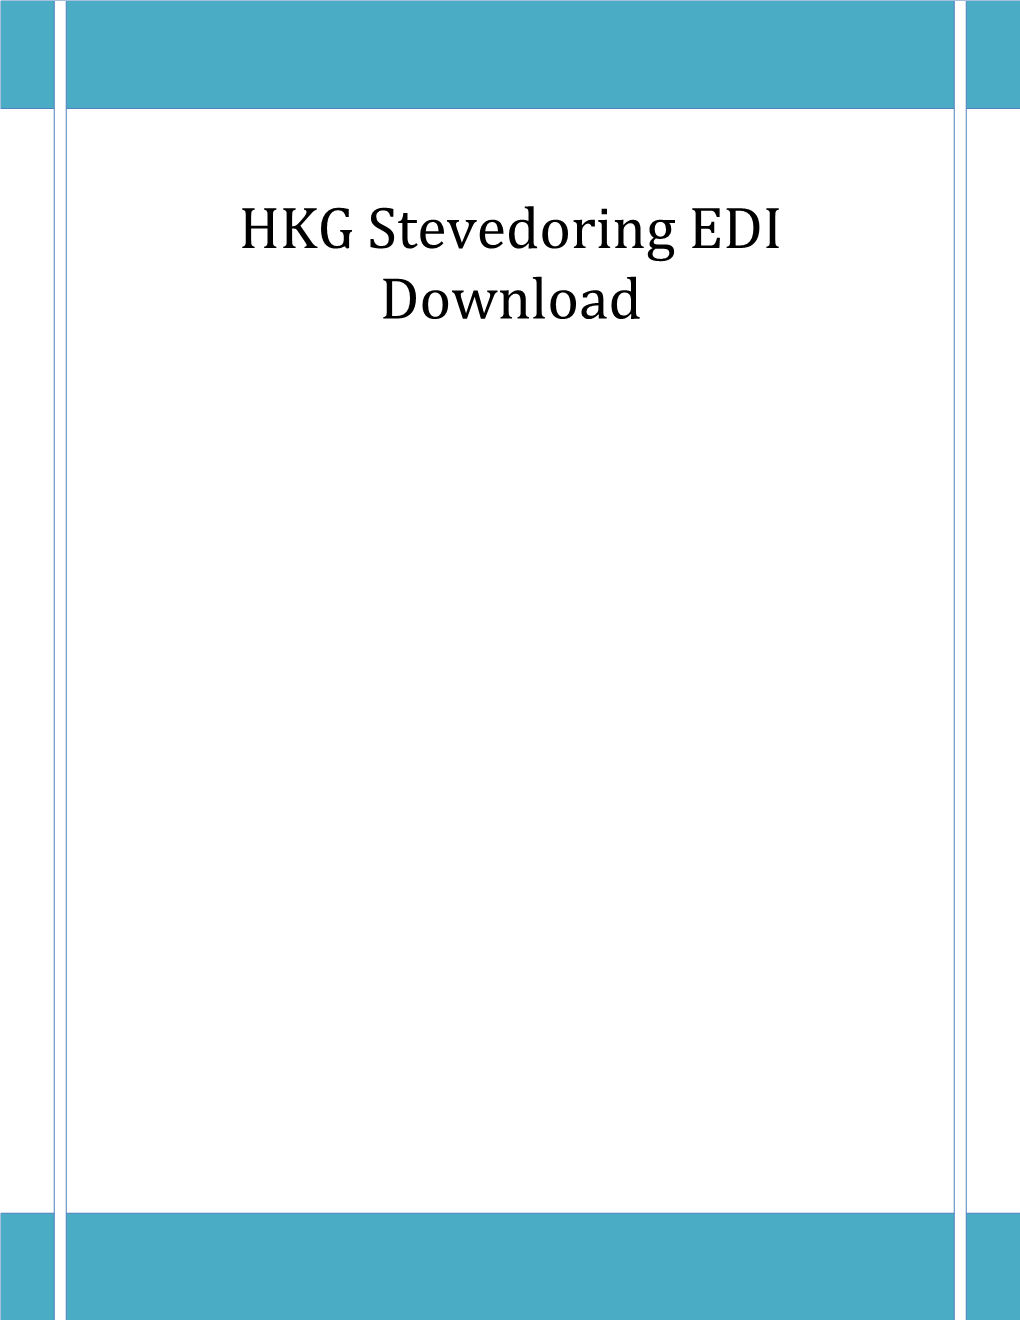 HKG Stevedoring EDI Download